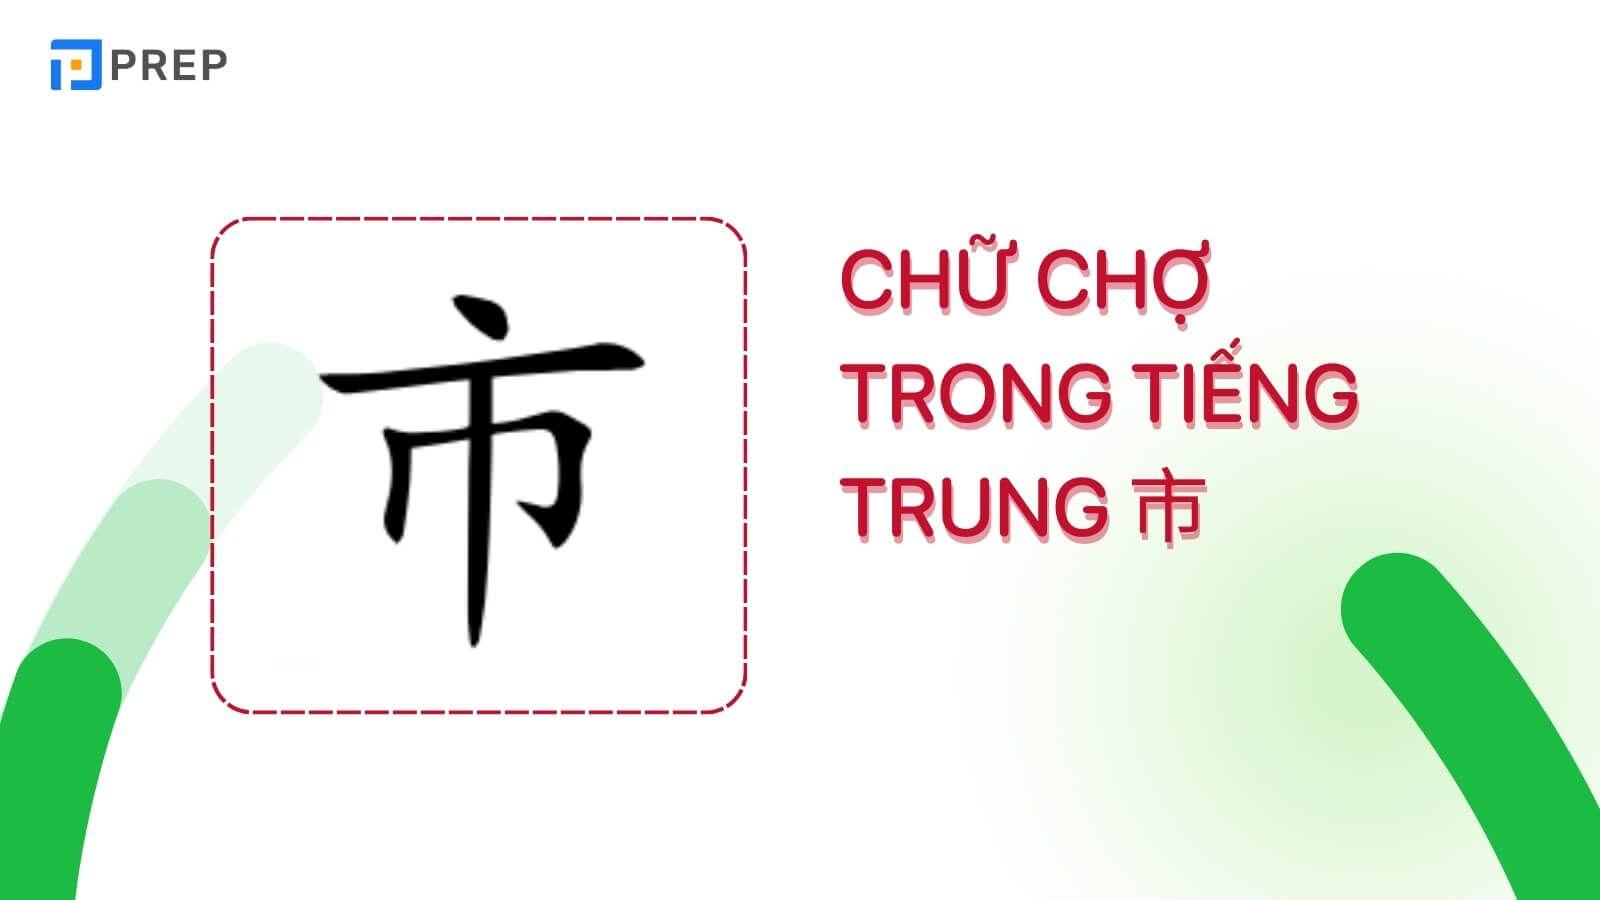 3 Hán tự thông dụng để diễn tả “chợ” trong tiếng Trung